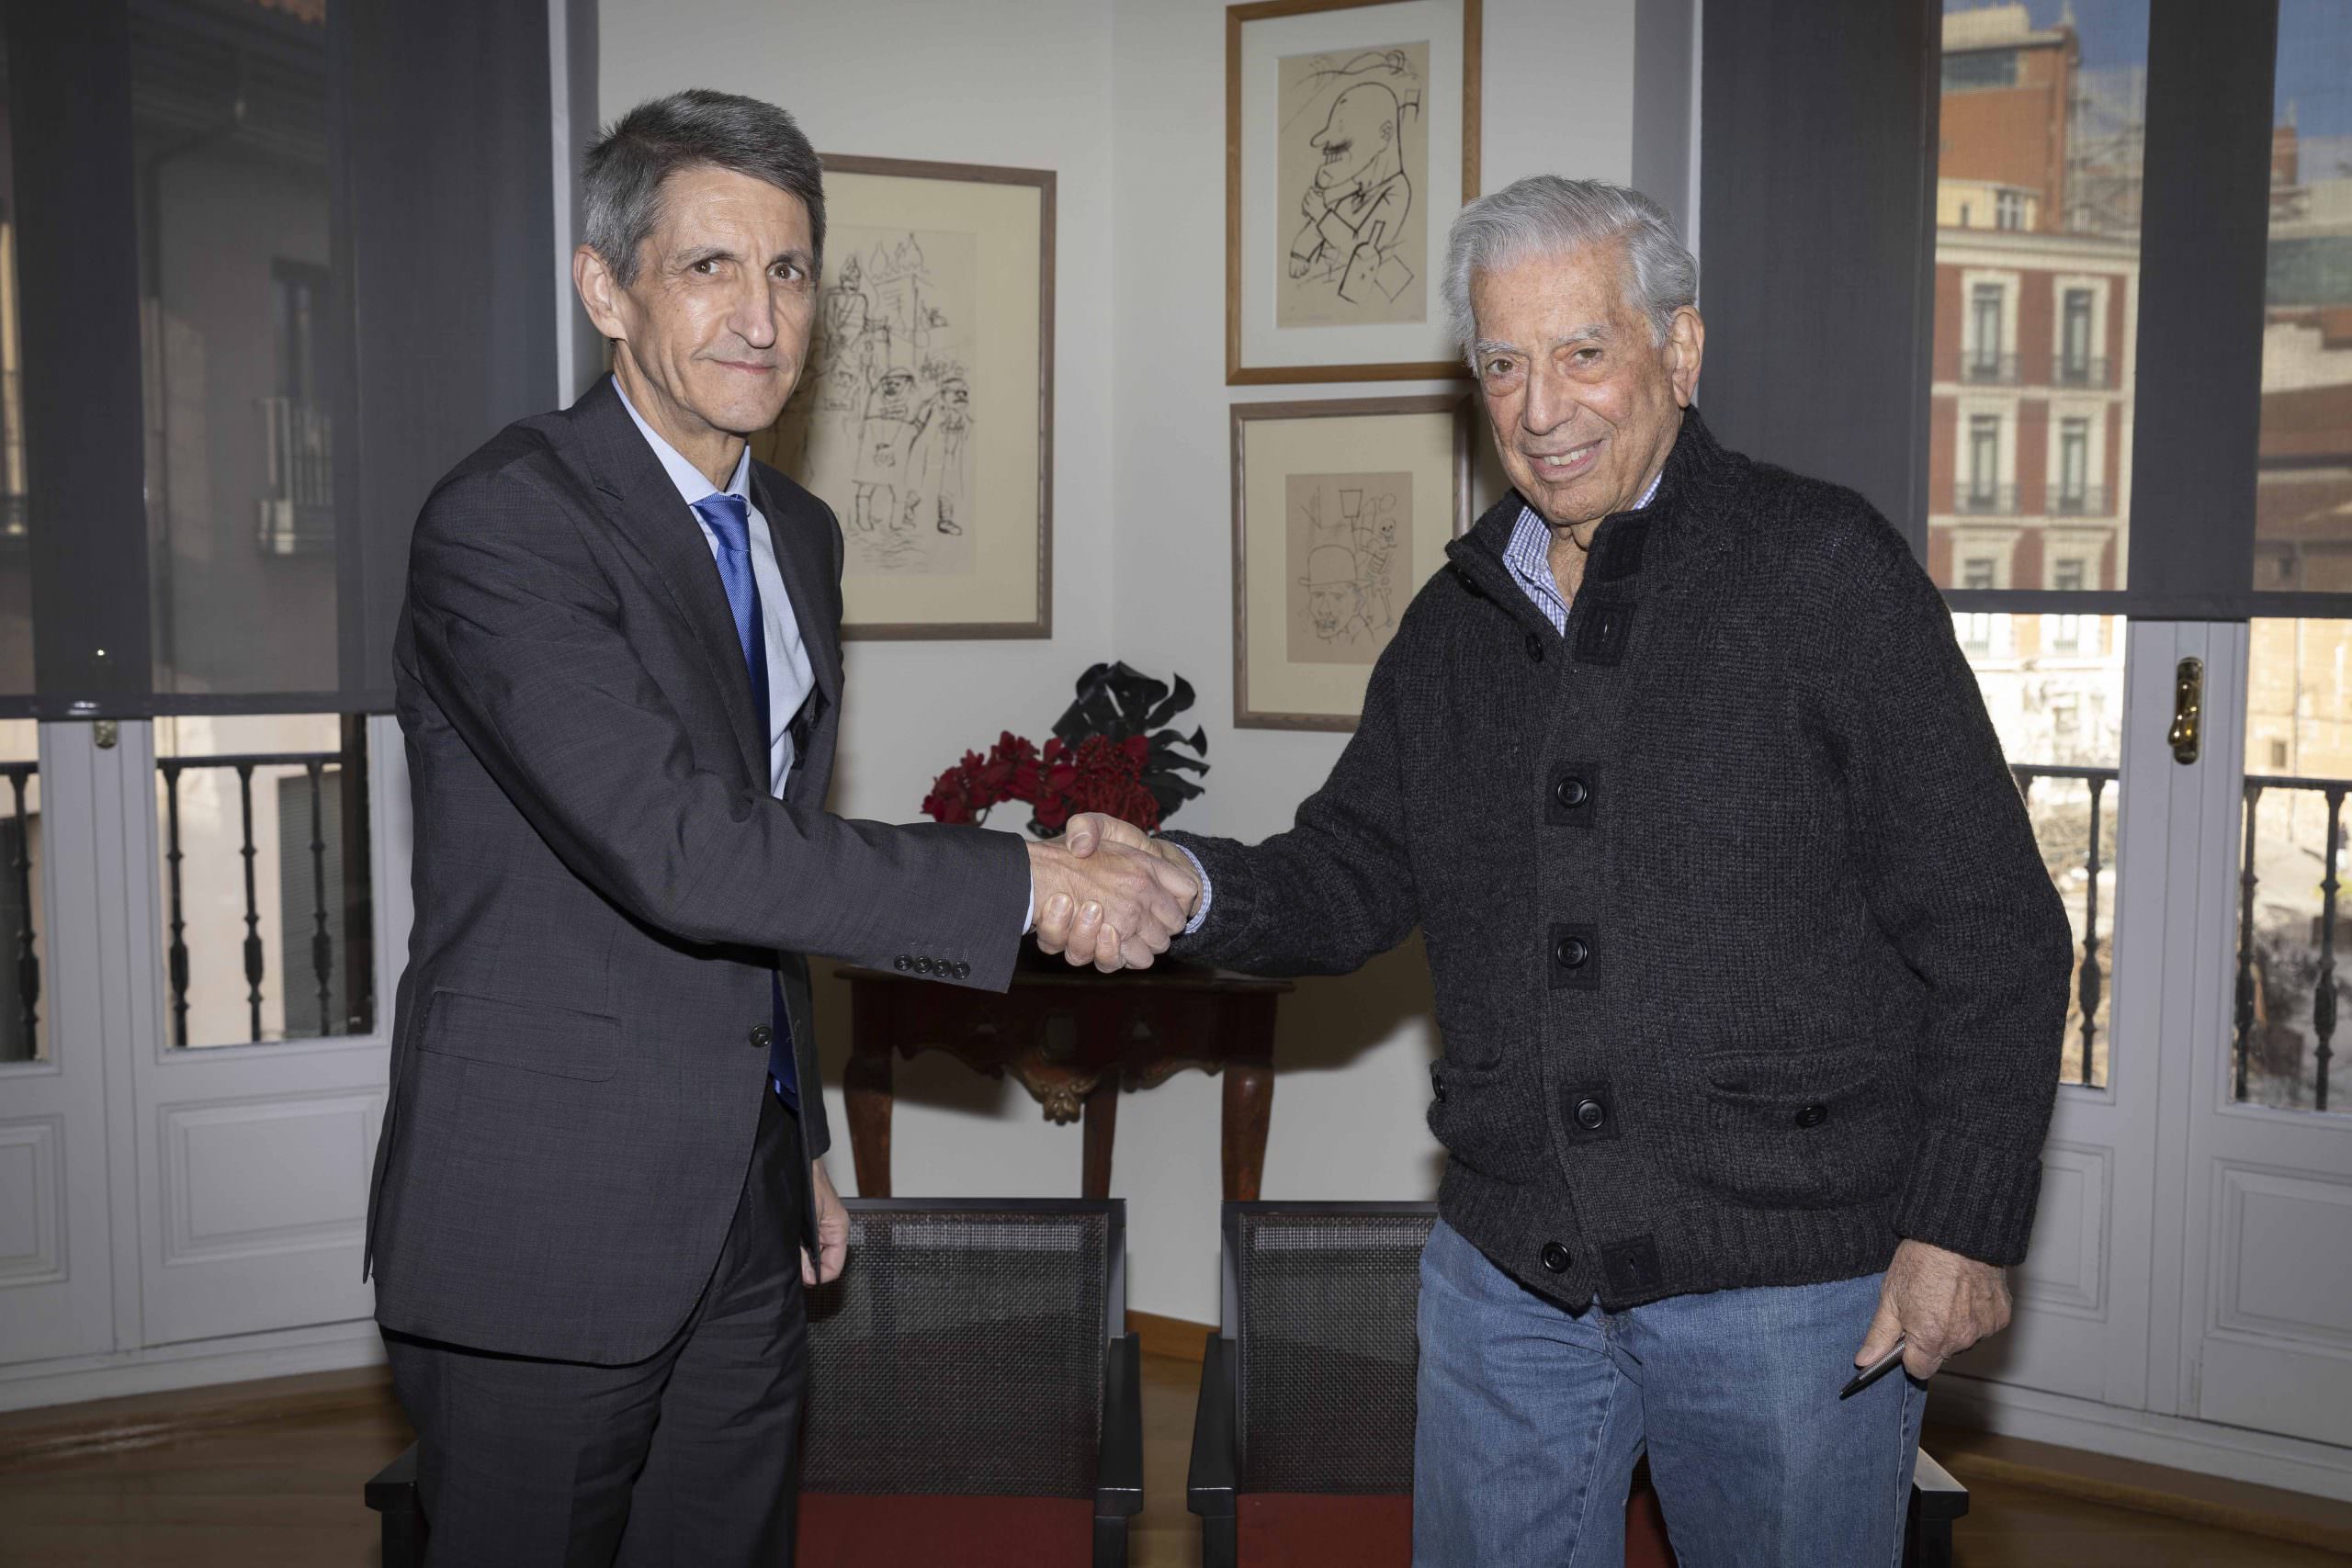 El presidente de la Fundación Bancaria Unicaja, José M. Domínguez, y Mario Vargas Llosa, presidente de la Cátedra Vargas Llosa, se estrechan la mano con motivo de la firma del convenio de colaboración